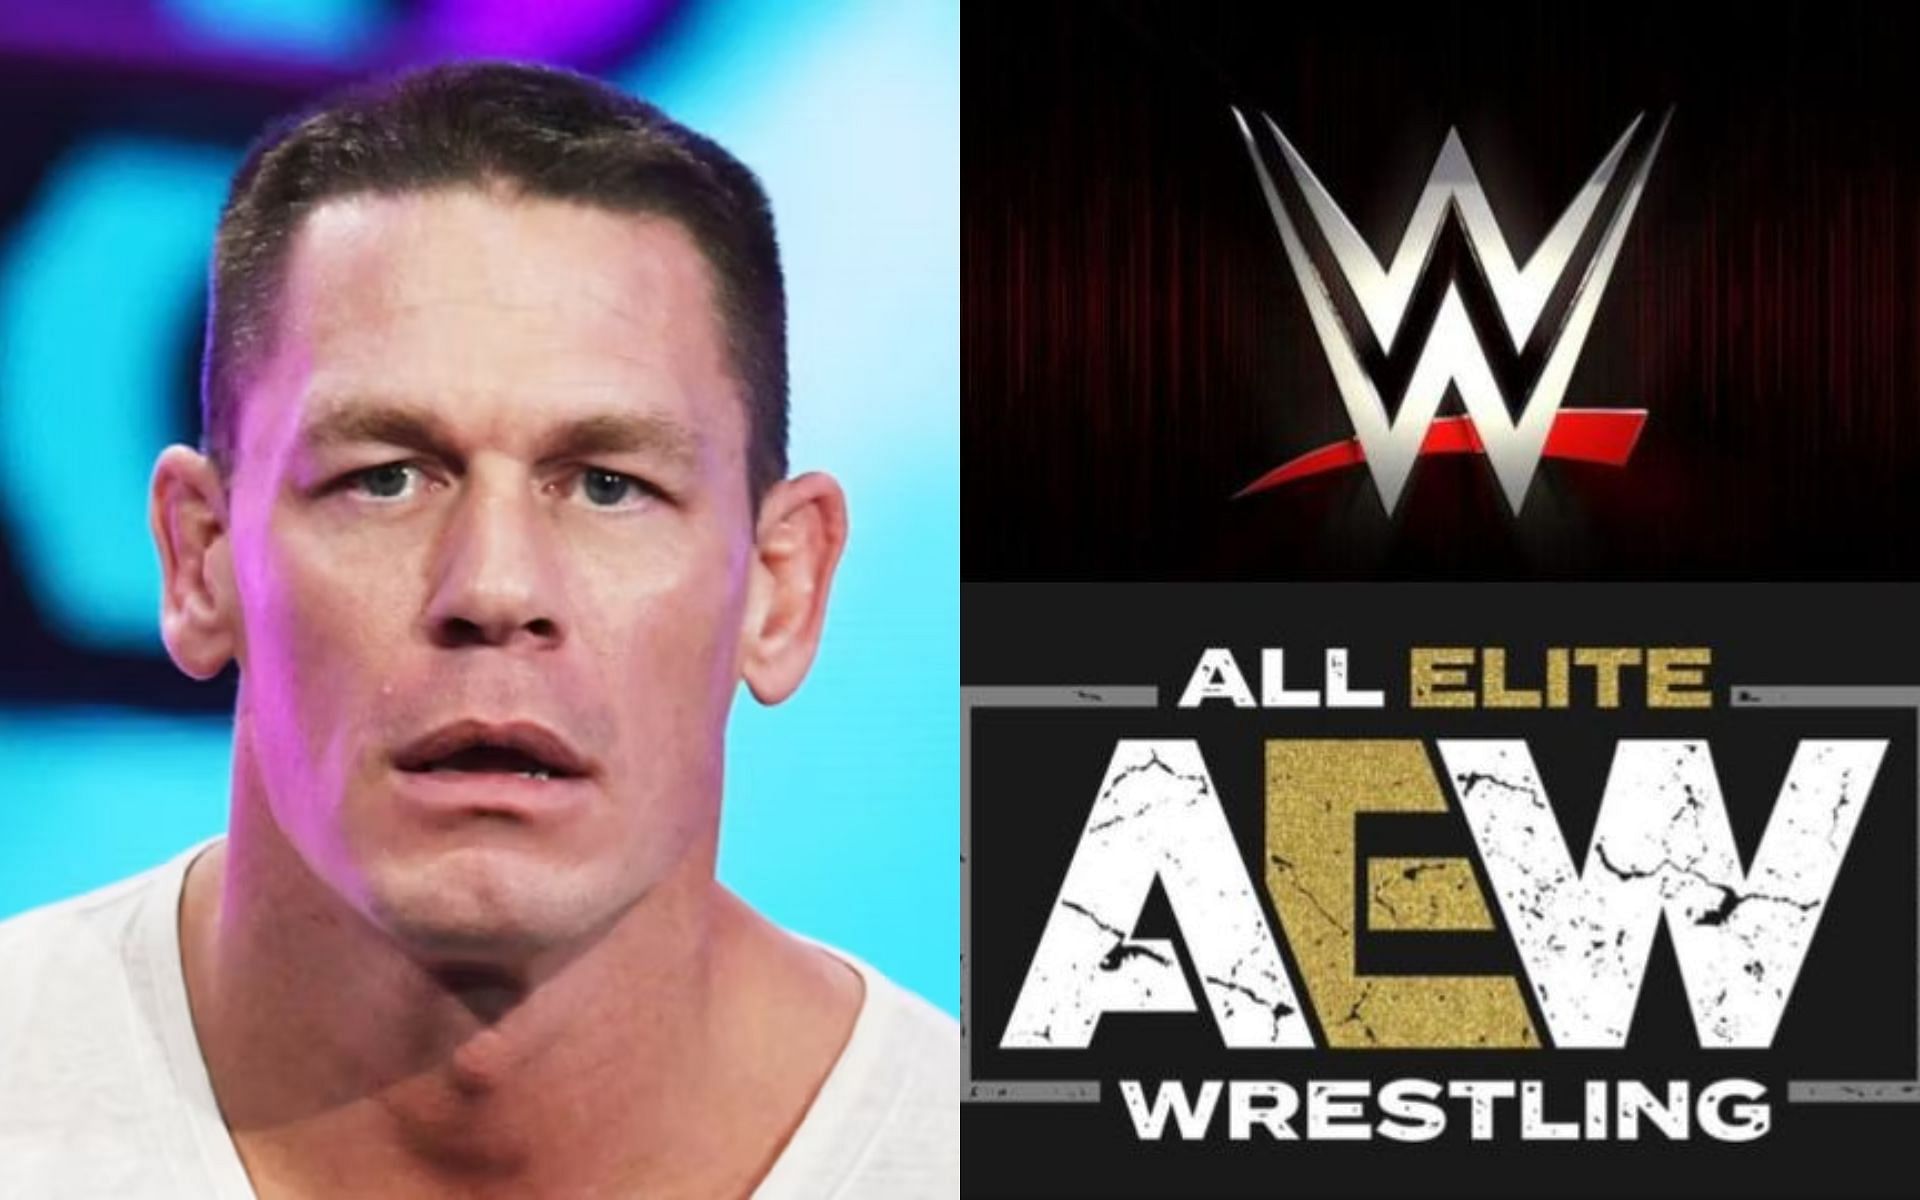 John Cena (left) and AEW and WWE logos (right).